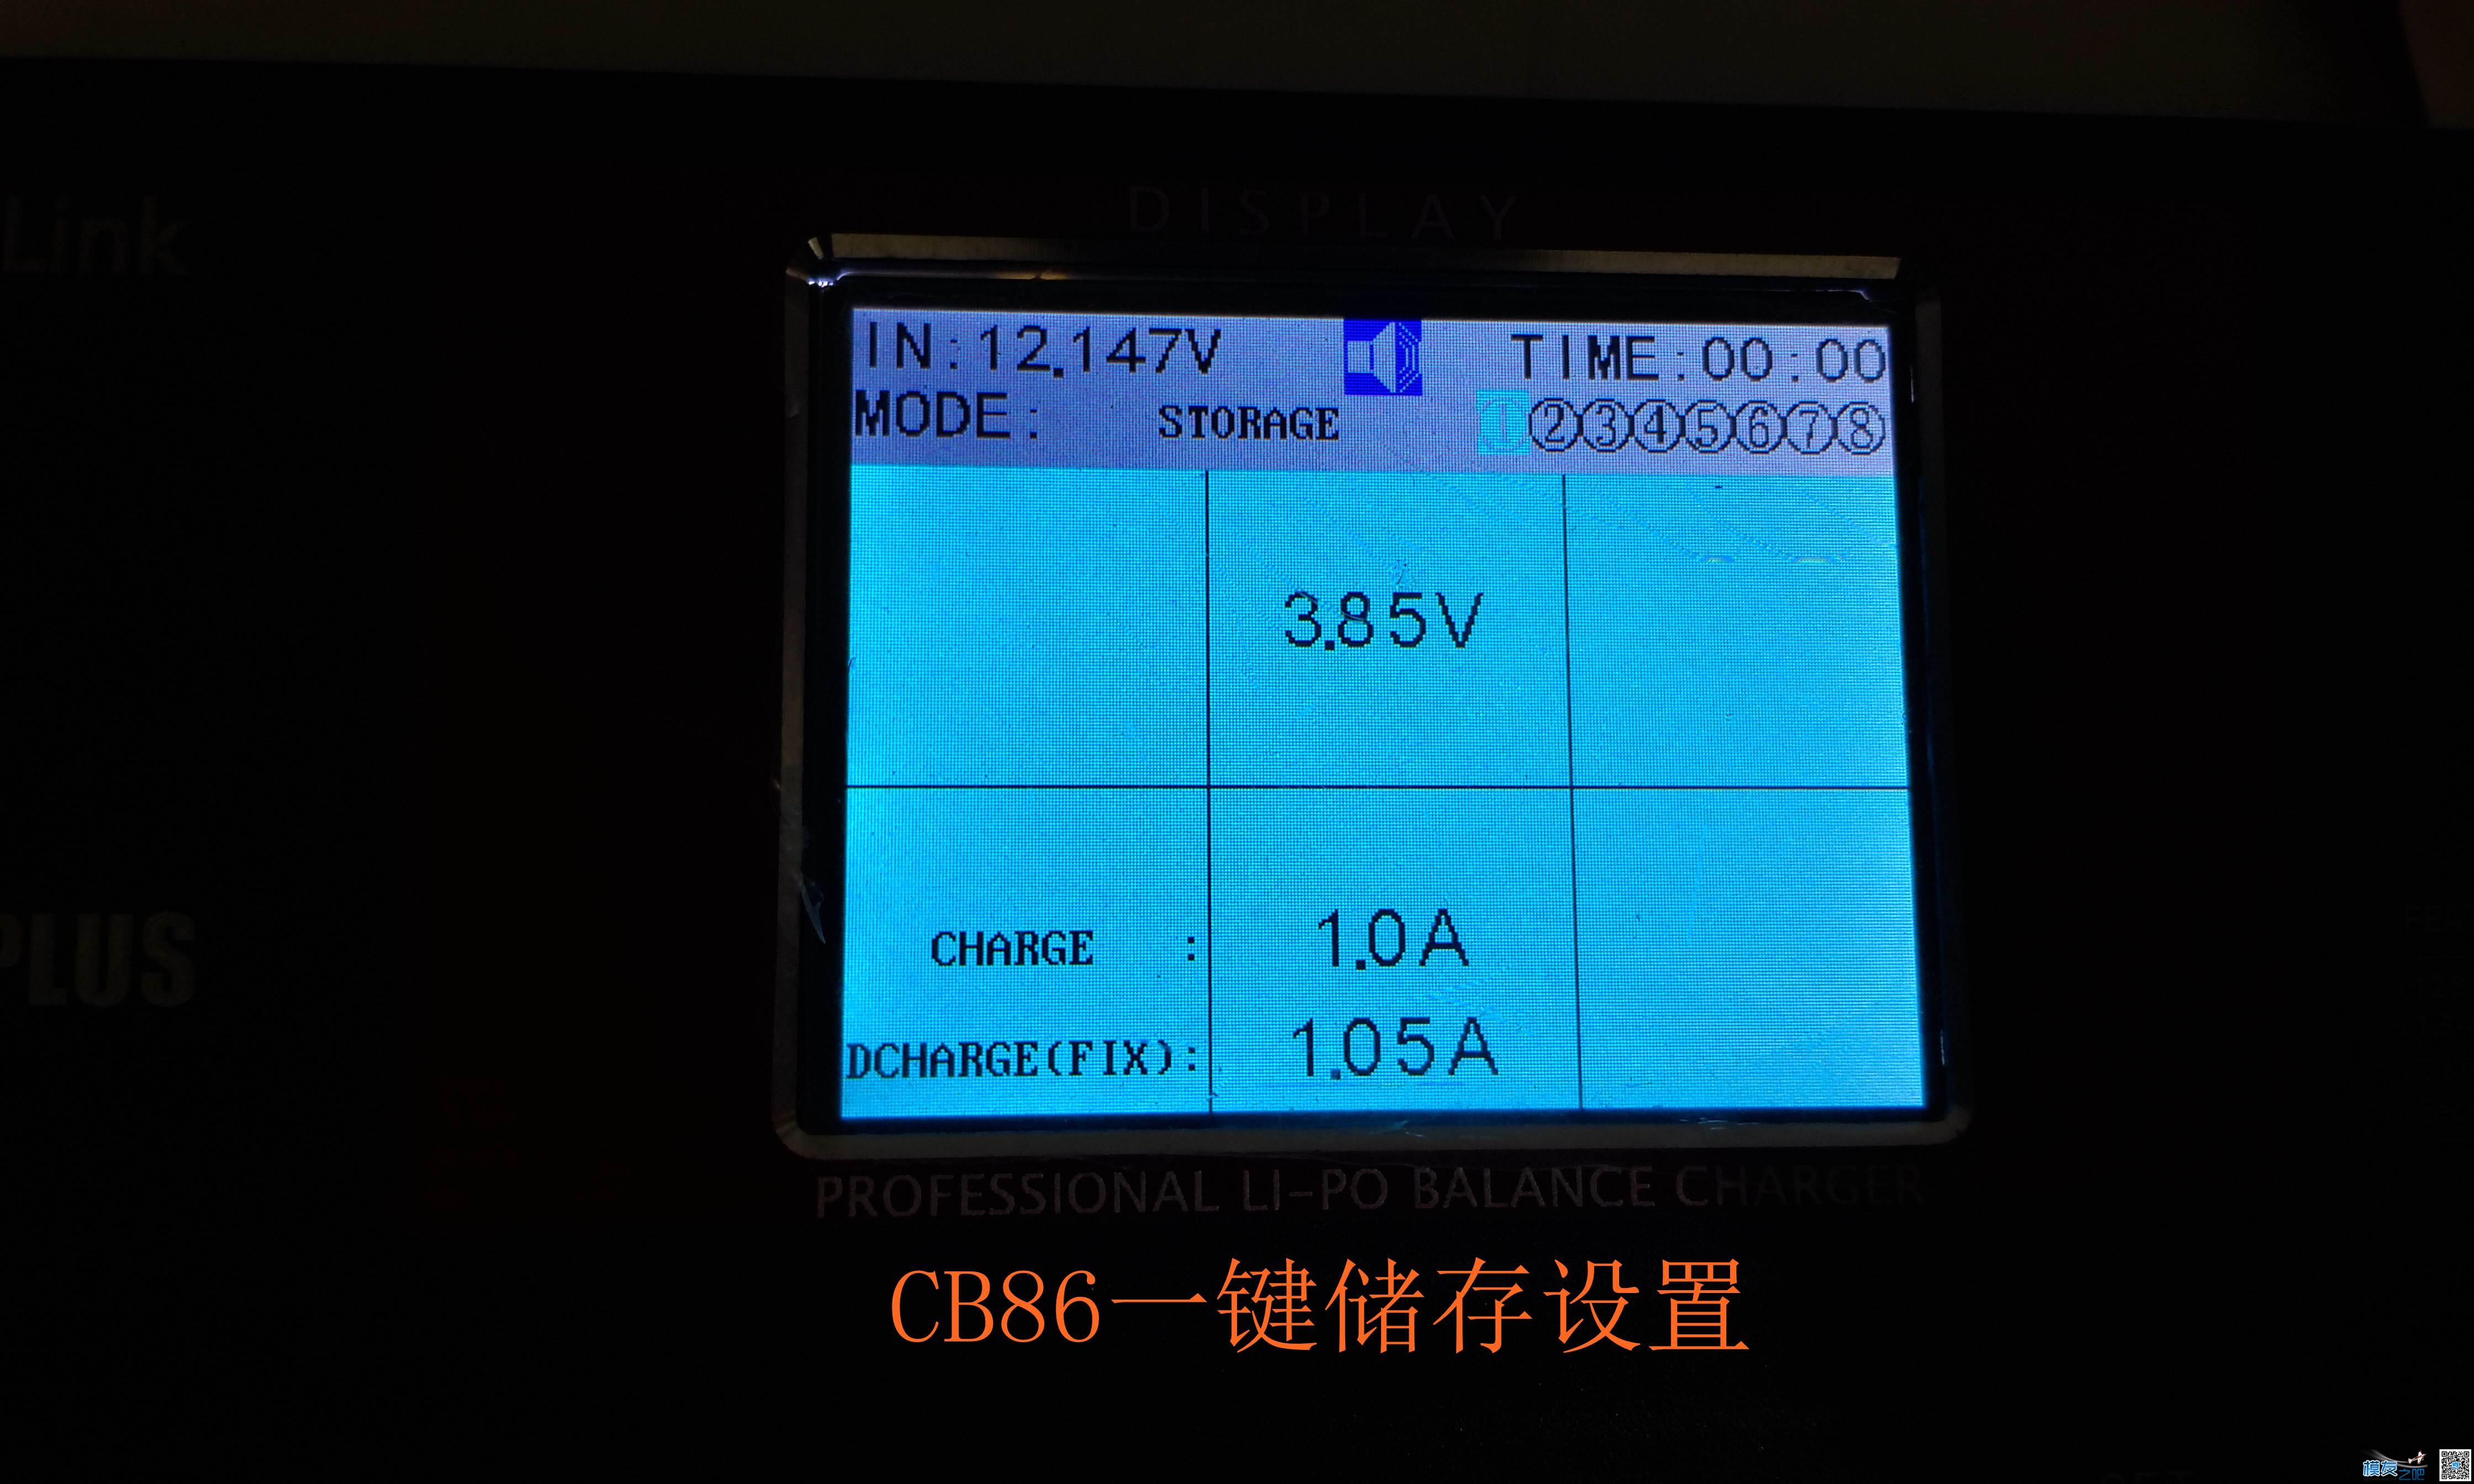 乐迪CP620开箱与CB86PLUS对比测试 电池,充电器,乐迪,固件,html 作者:455090630 9723 